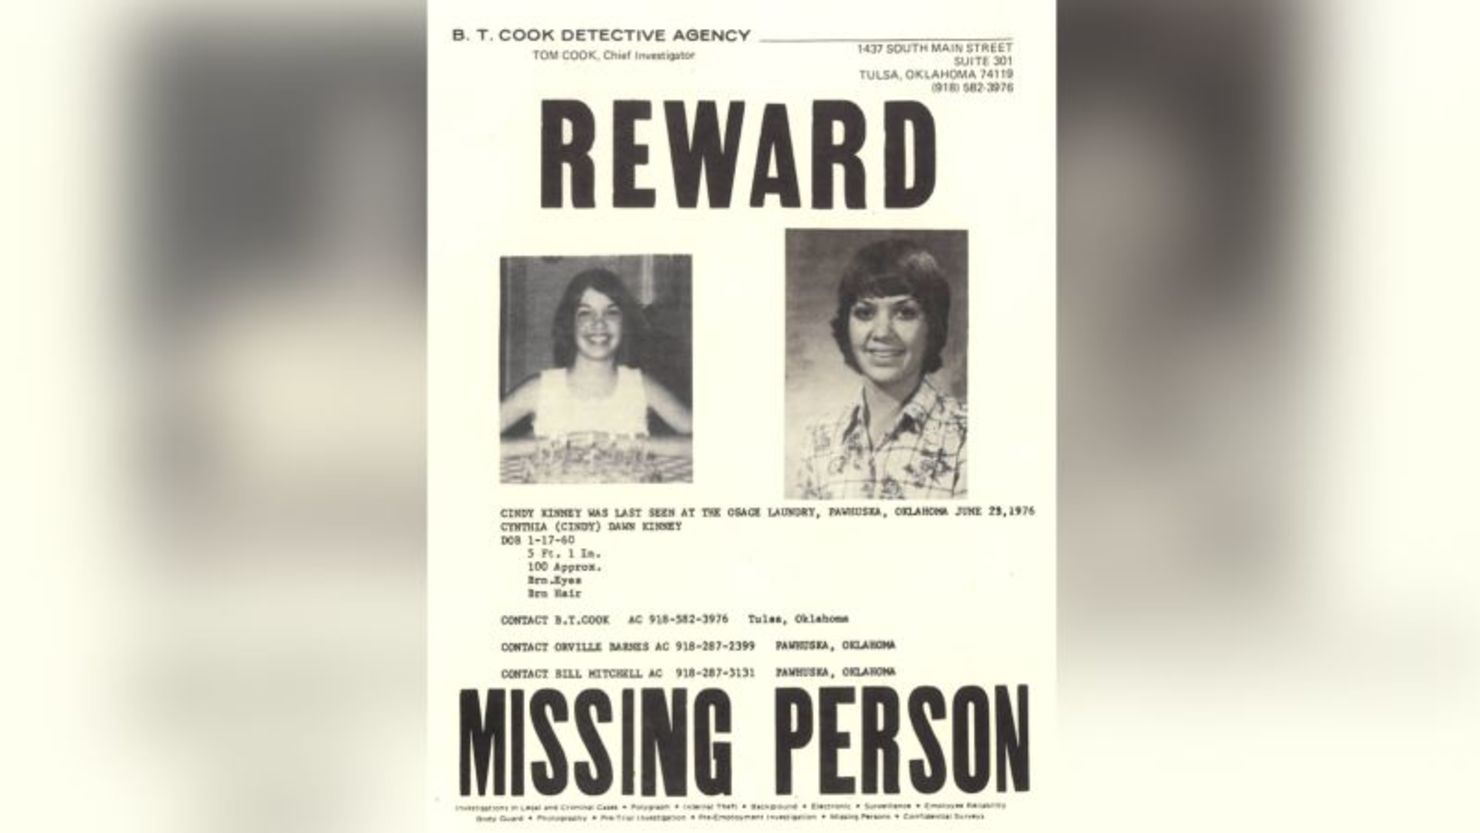 Cynthia Dawn Kinney, de 16 años, fue vista por última vez en una lavandería en junio de 1976 en Pawhuska, Oklahoma. Las autoridades dicen que el asesino en serie de BTK, Dennis Rader, es el principal sospechoso de su desaparición.